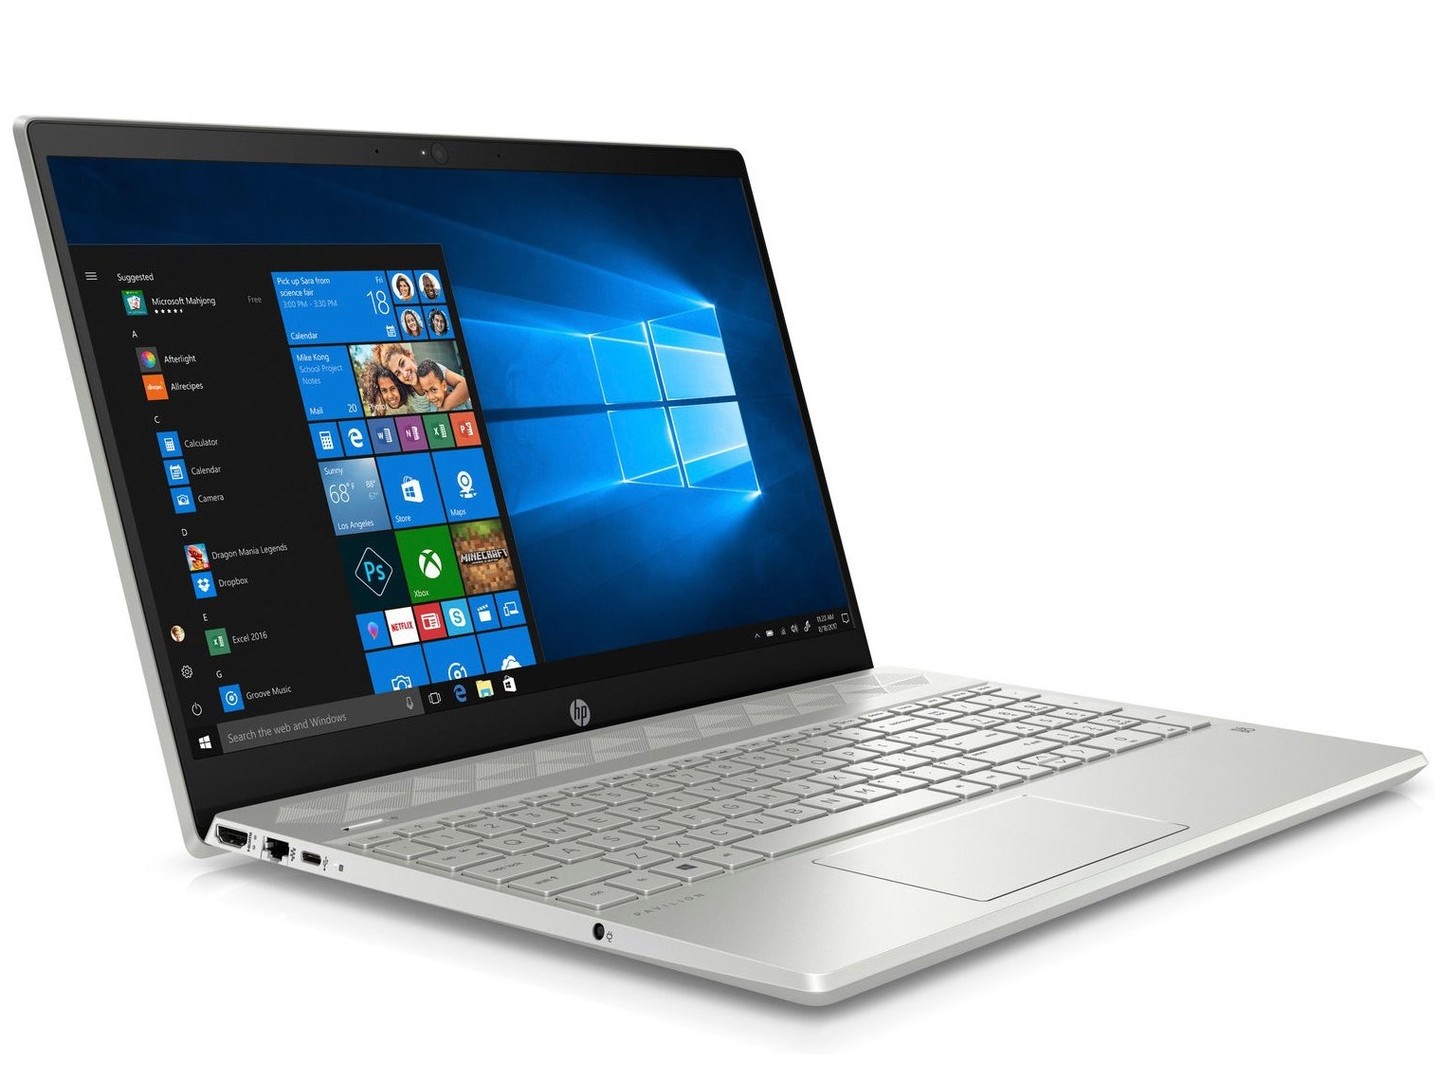 HP Pavilion 15 (Core i5-8250U, NVIDIA MX130) Laptop Review ...